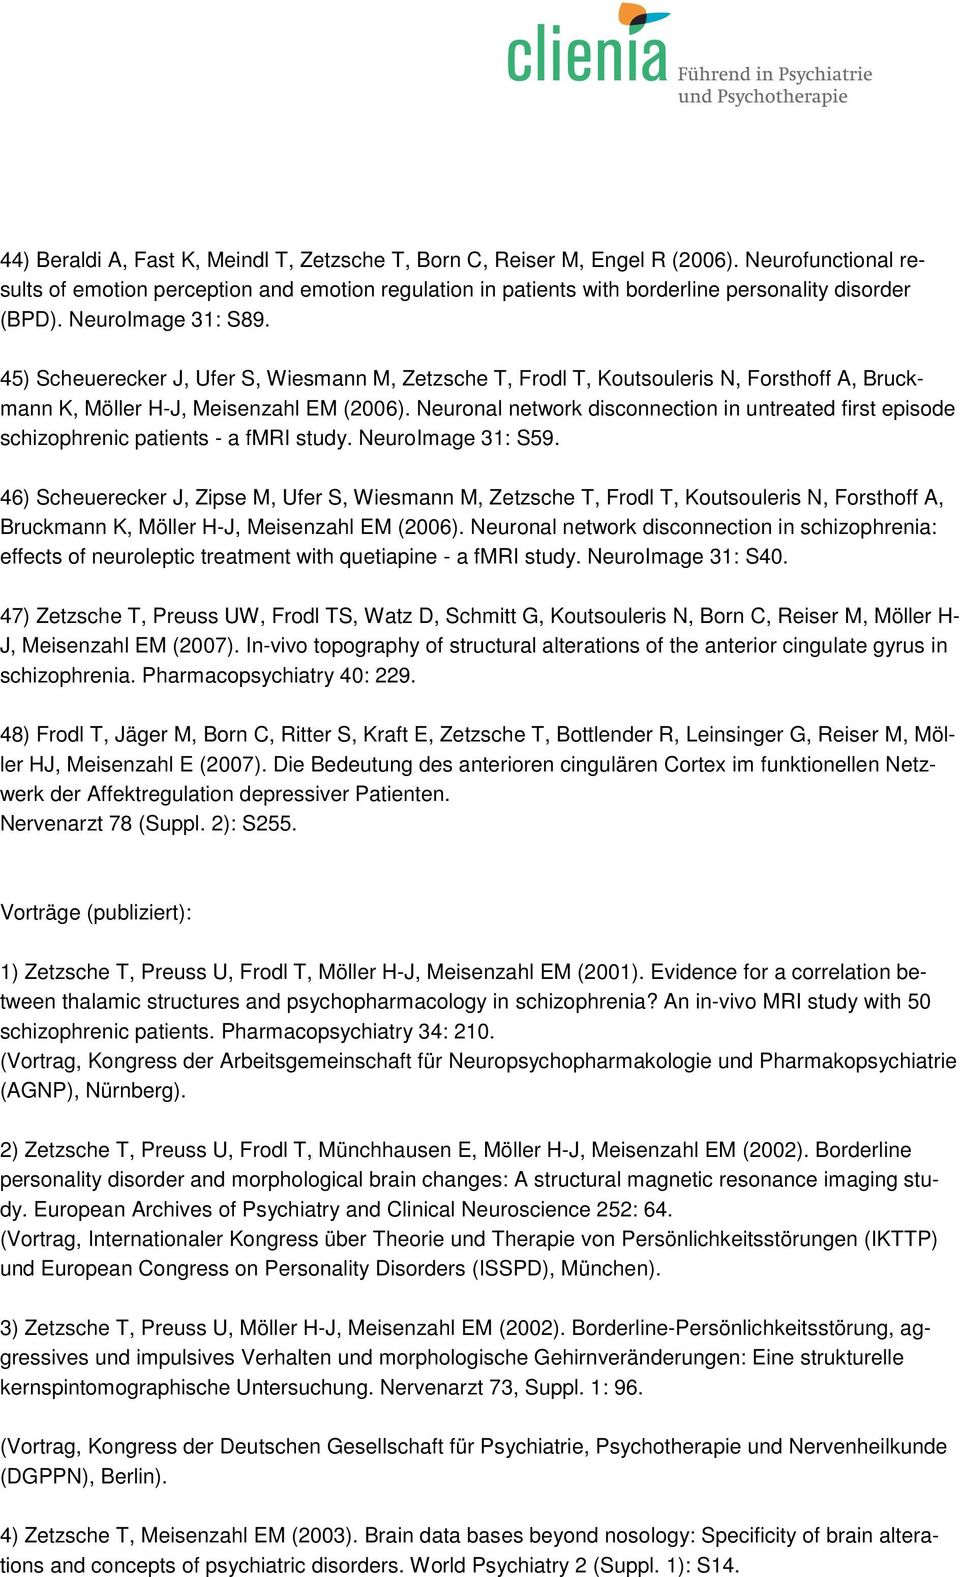 45) Scheuerecker J, Ufer S, Wiesmann M, Zetzsche T, Frodl T, Koutsouleris N, Forsthoff A, Bruckmann K, Möller H-J, Meisenzahl EM (2006).